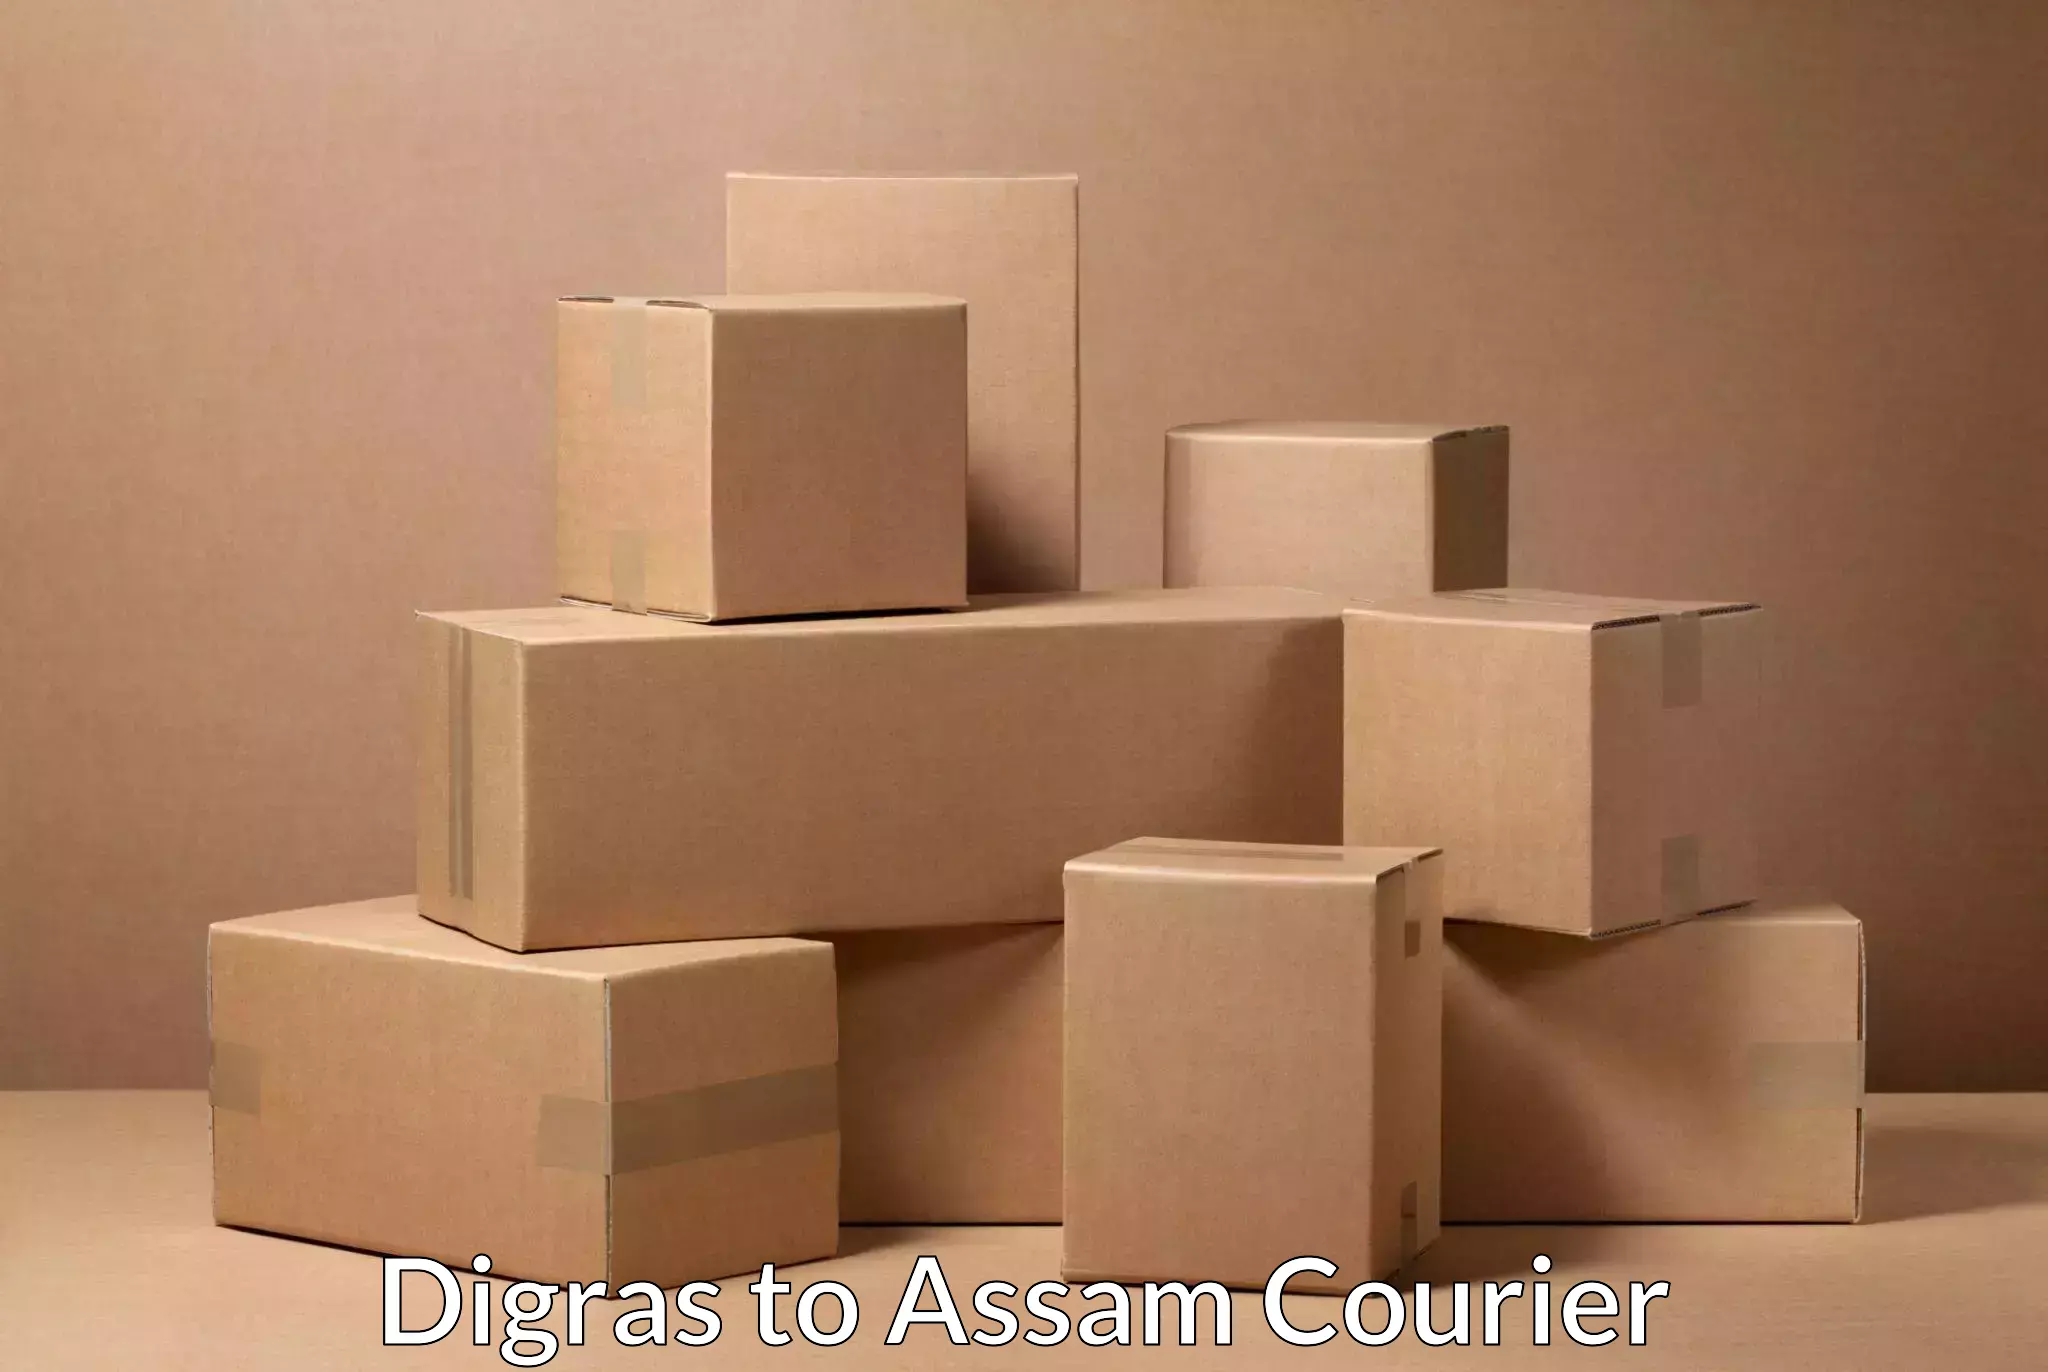 User-friendly courier app Digras to Thelamara